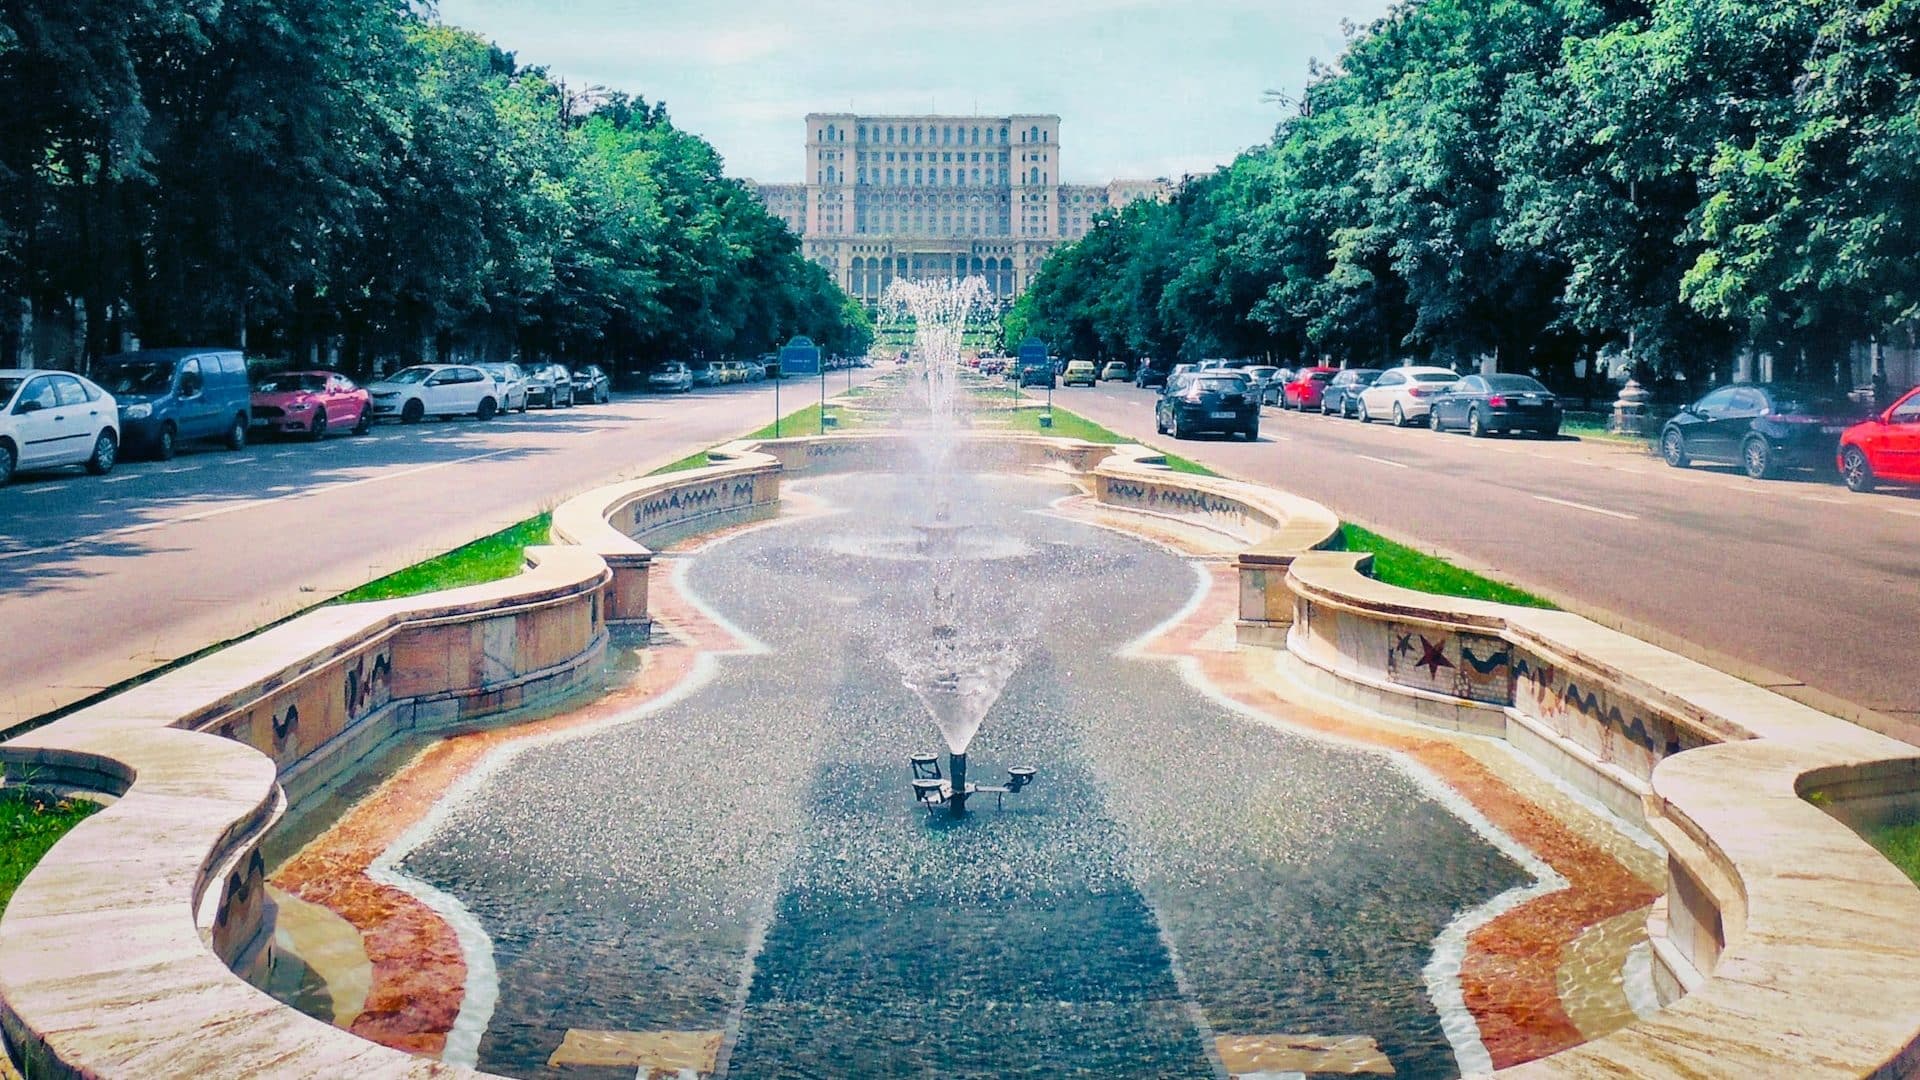 Situados en el corazón de la ciudad, El bulevar Unirii y la zona del edificio del Parlamento se encuentran entre los mejores lugares de Bucarest para los turistas